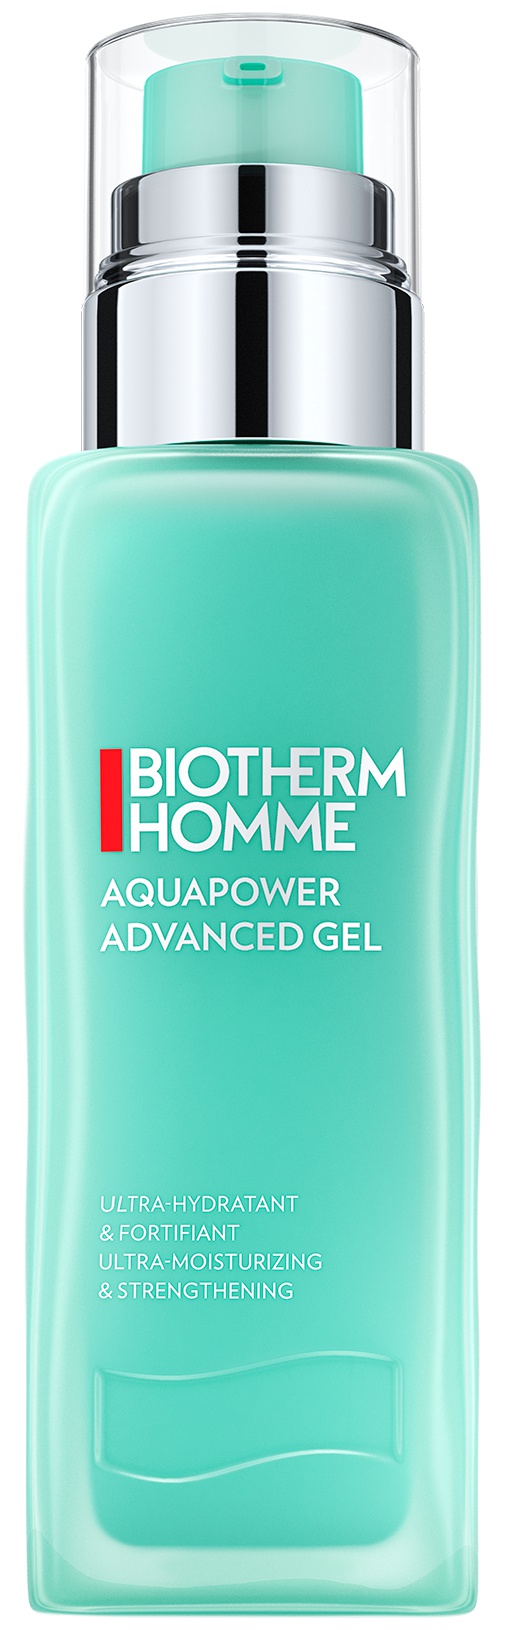 Biotherm Homme Aquapower Gel Advanced Moisturizer